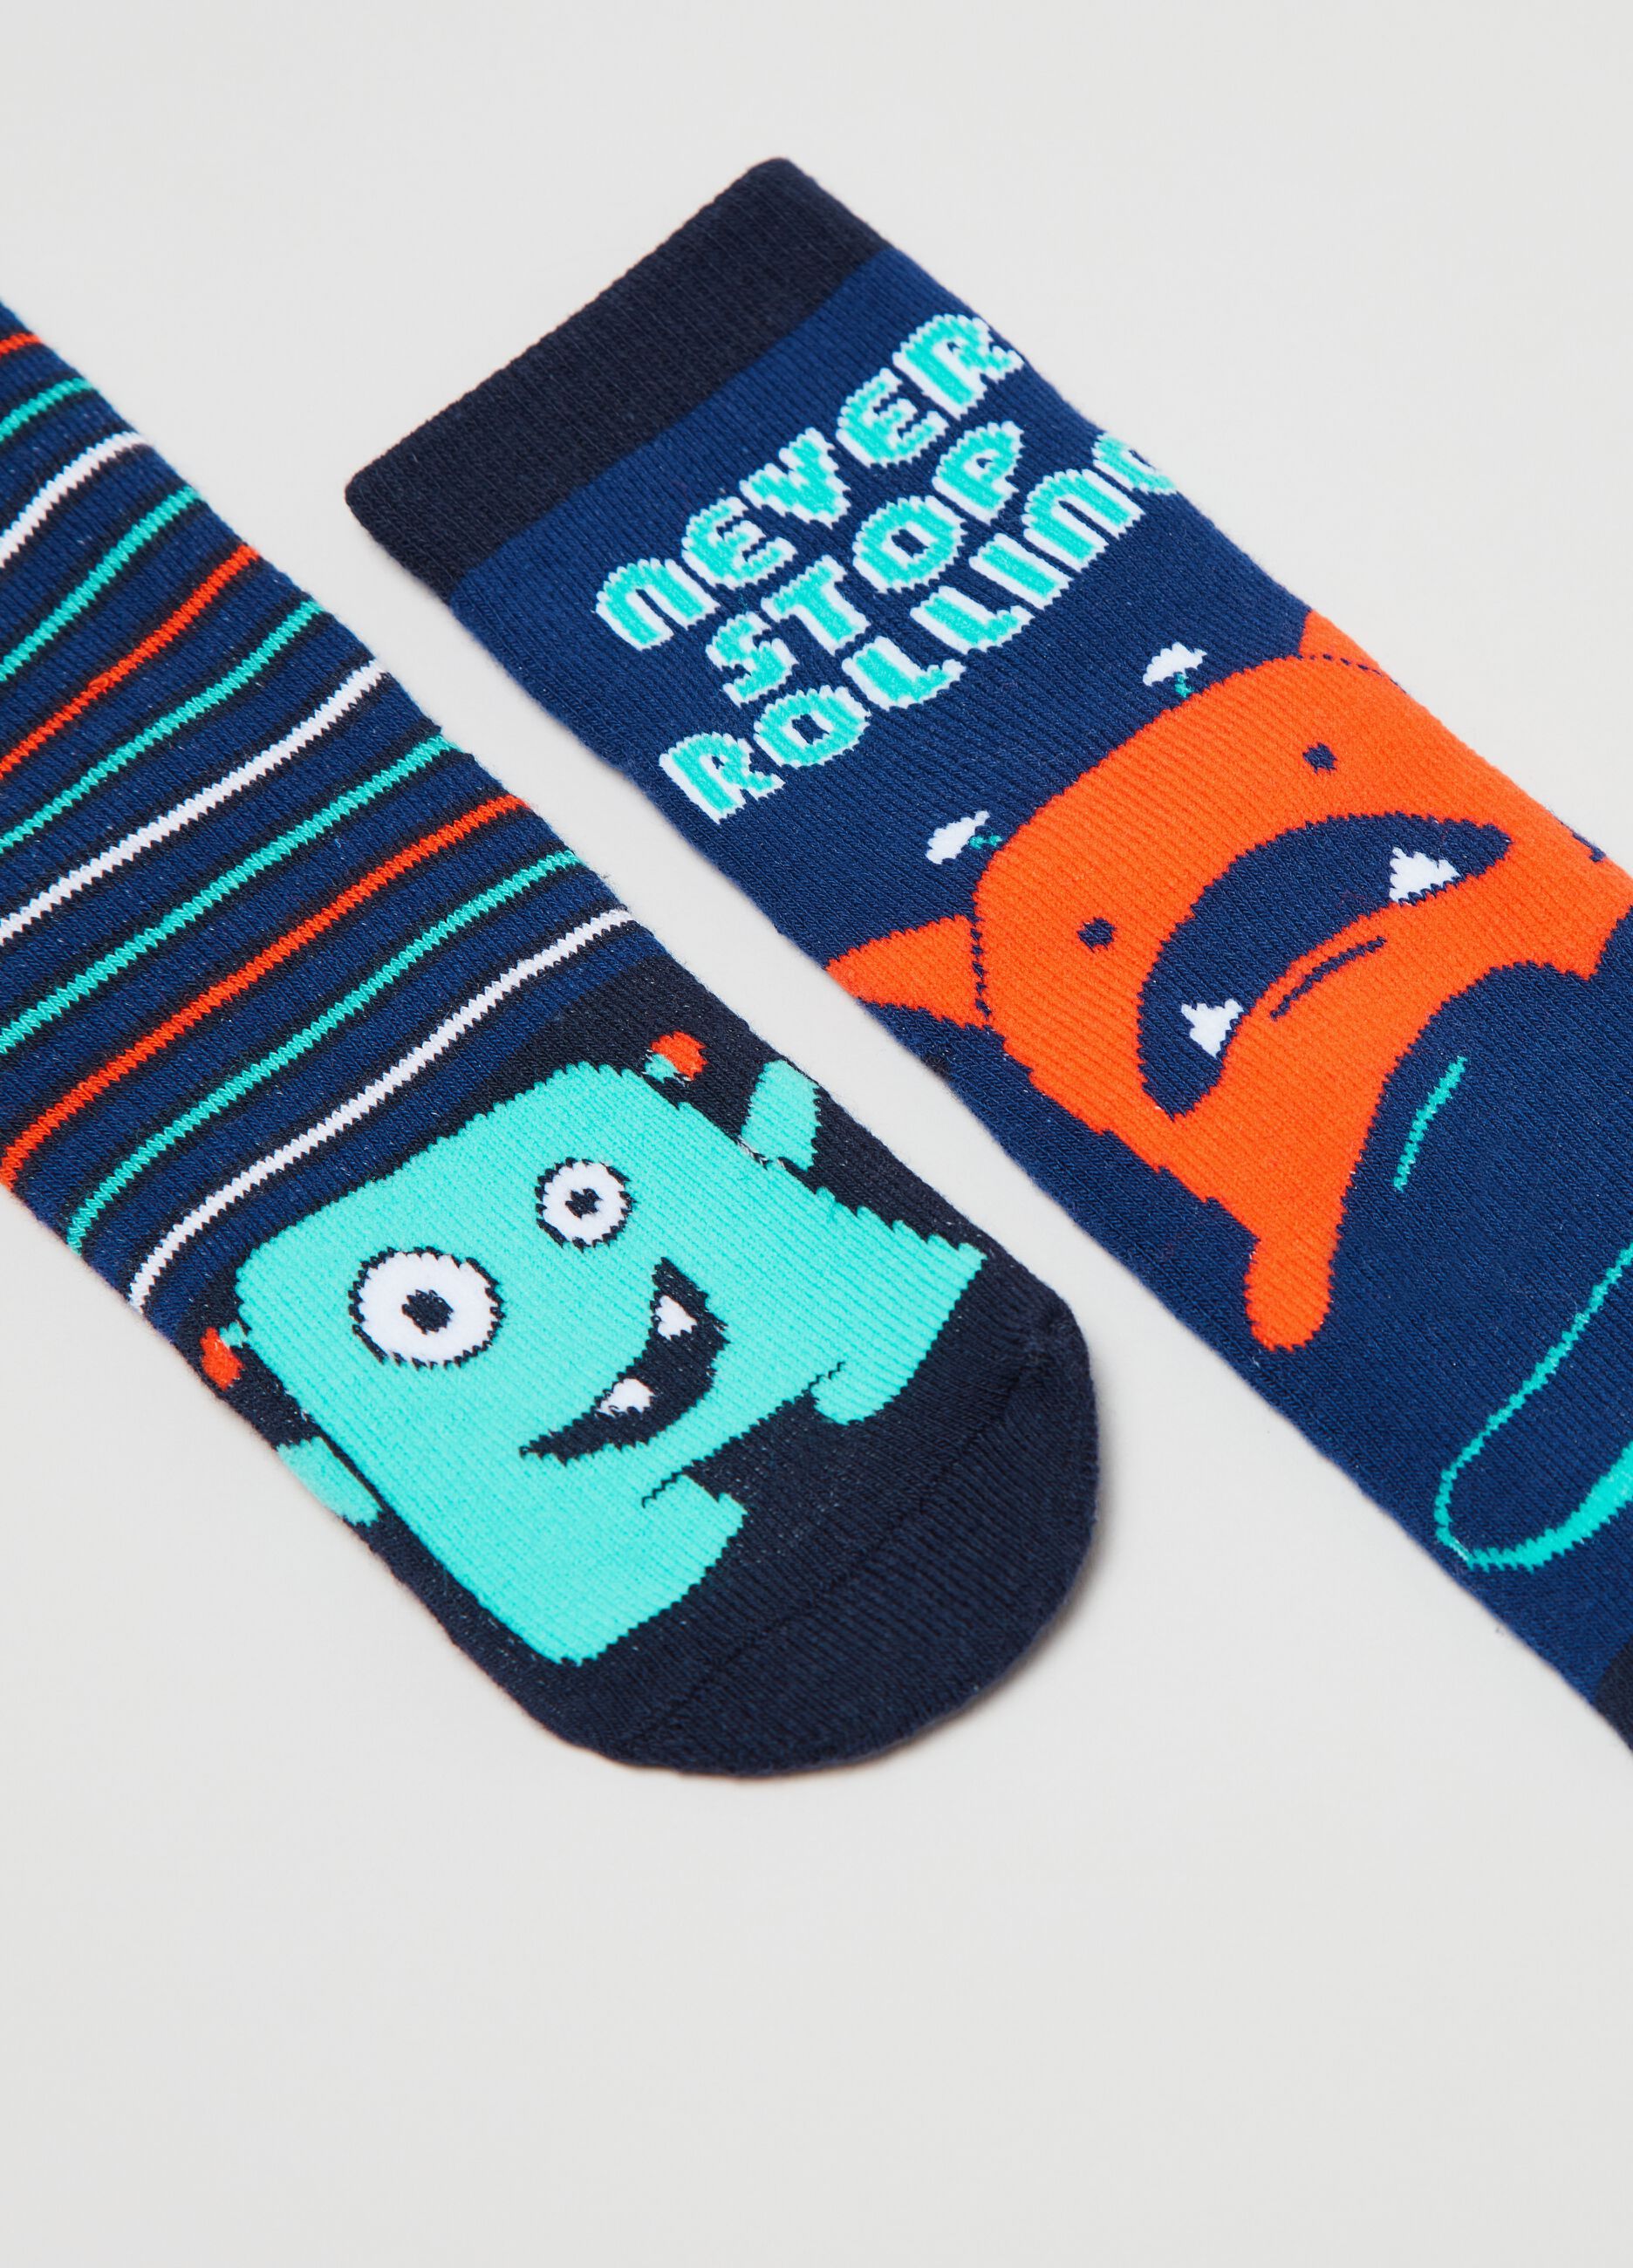 Two-pair pack slipper socks with monster design